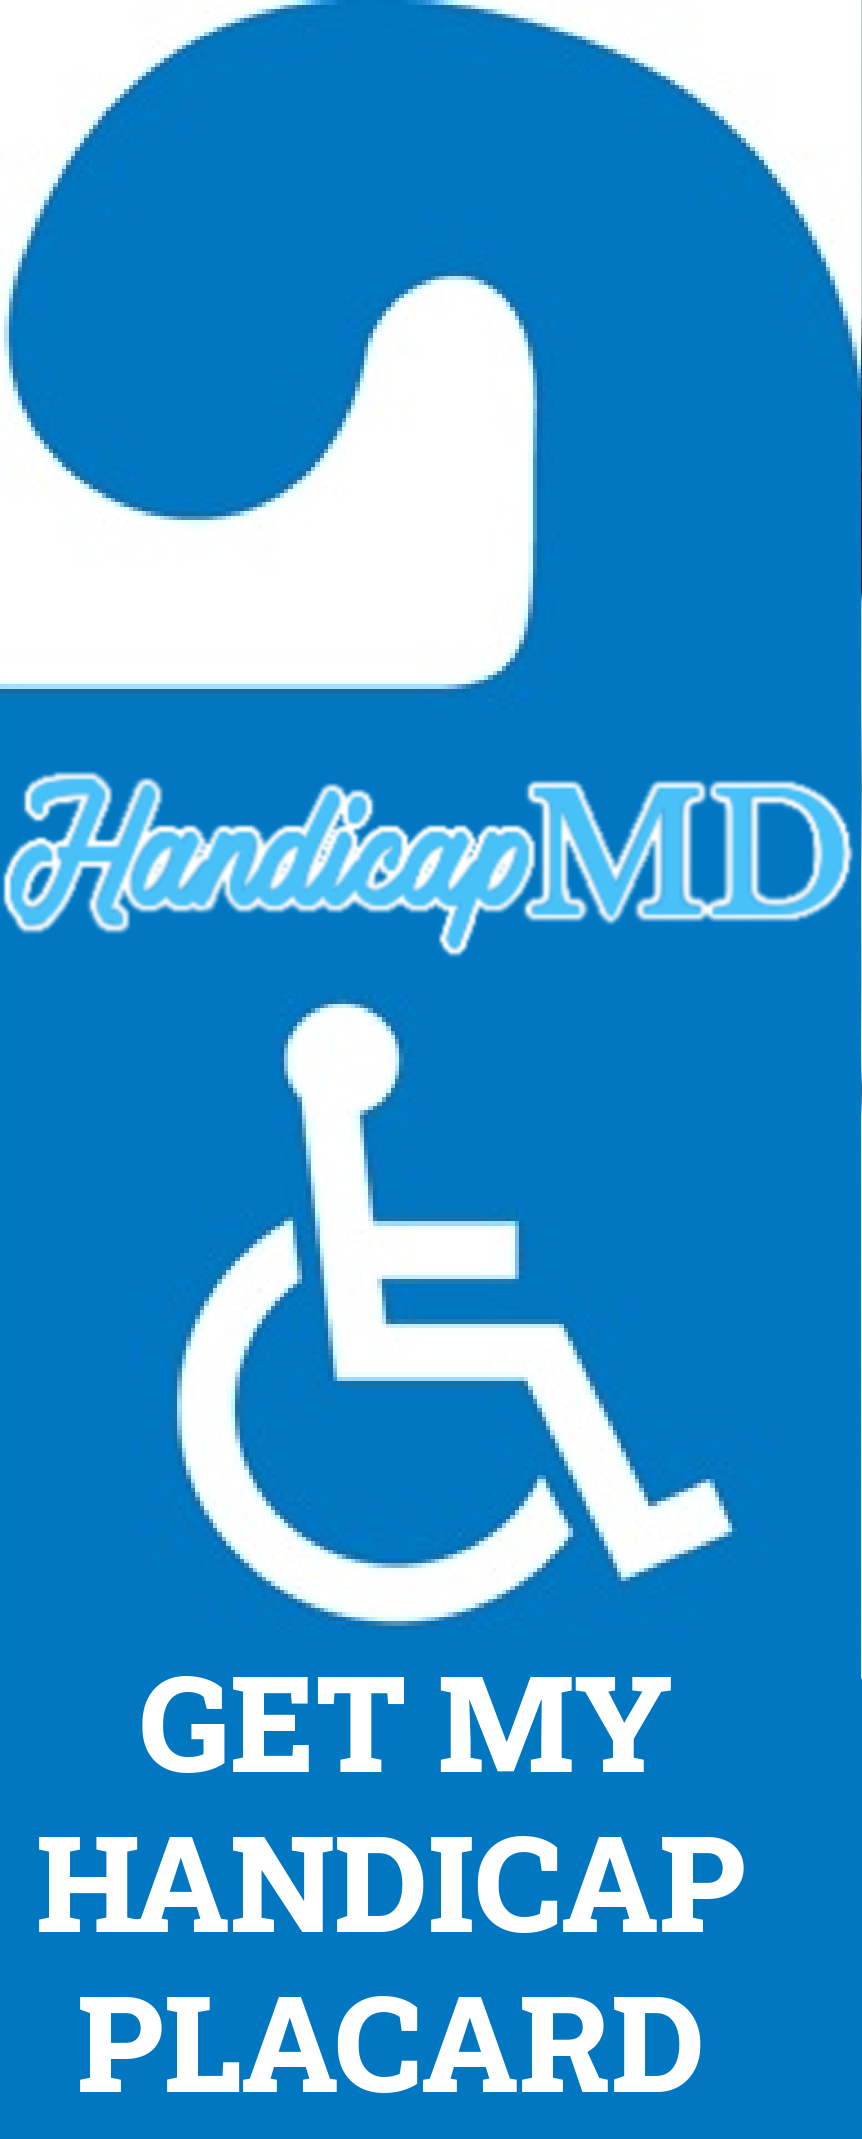 Ohio Handicap Parking Placards